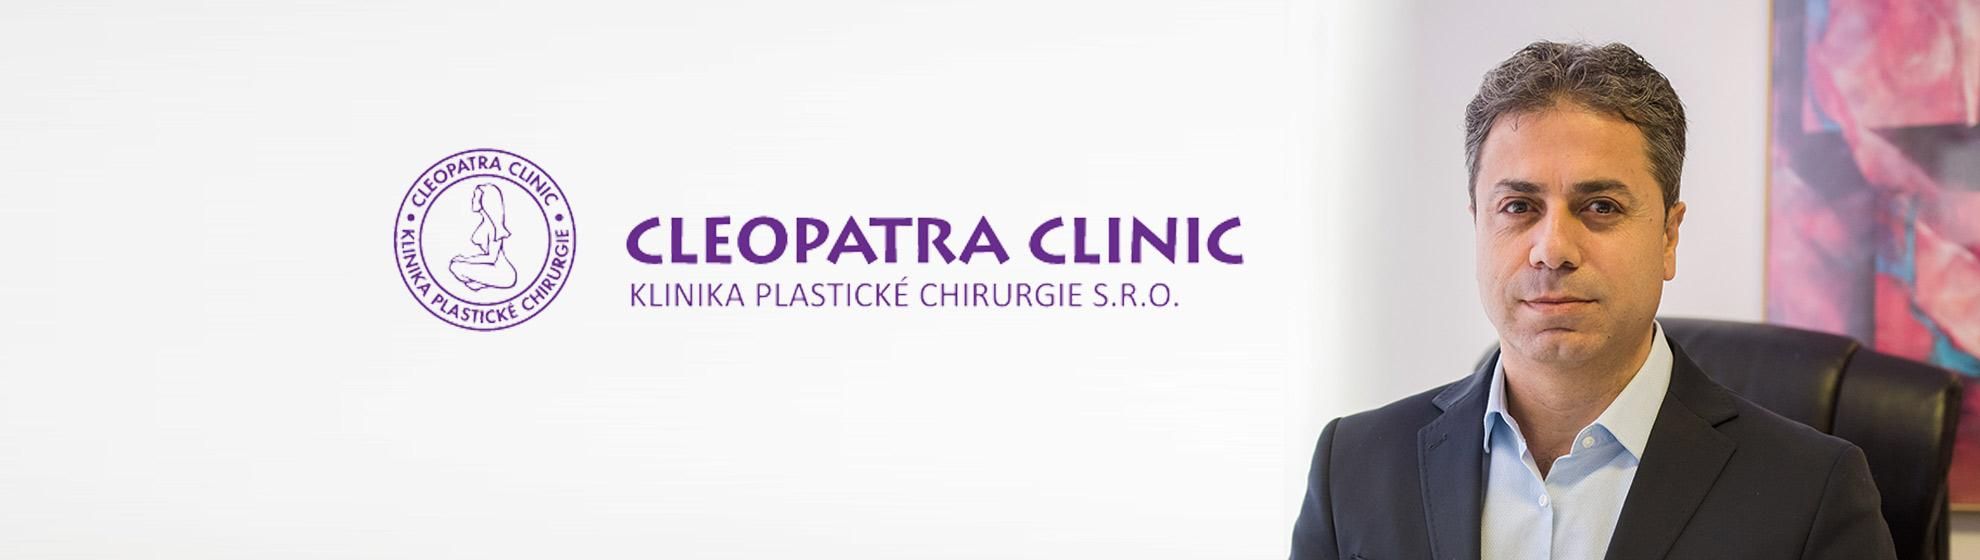 Cleopatra Clinic, Klinika Plastické Chirurgie s.r.o.